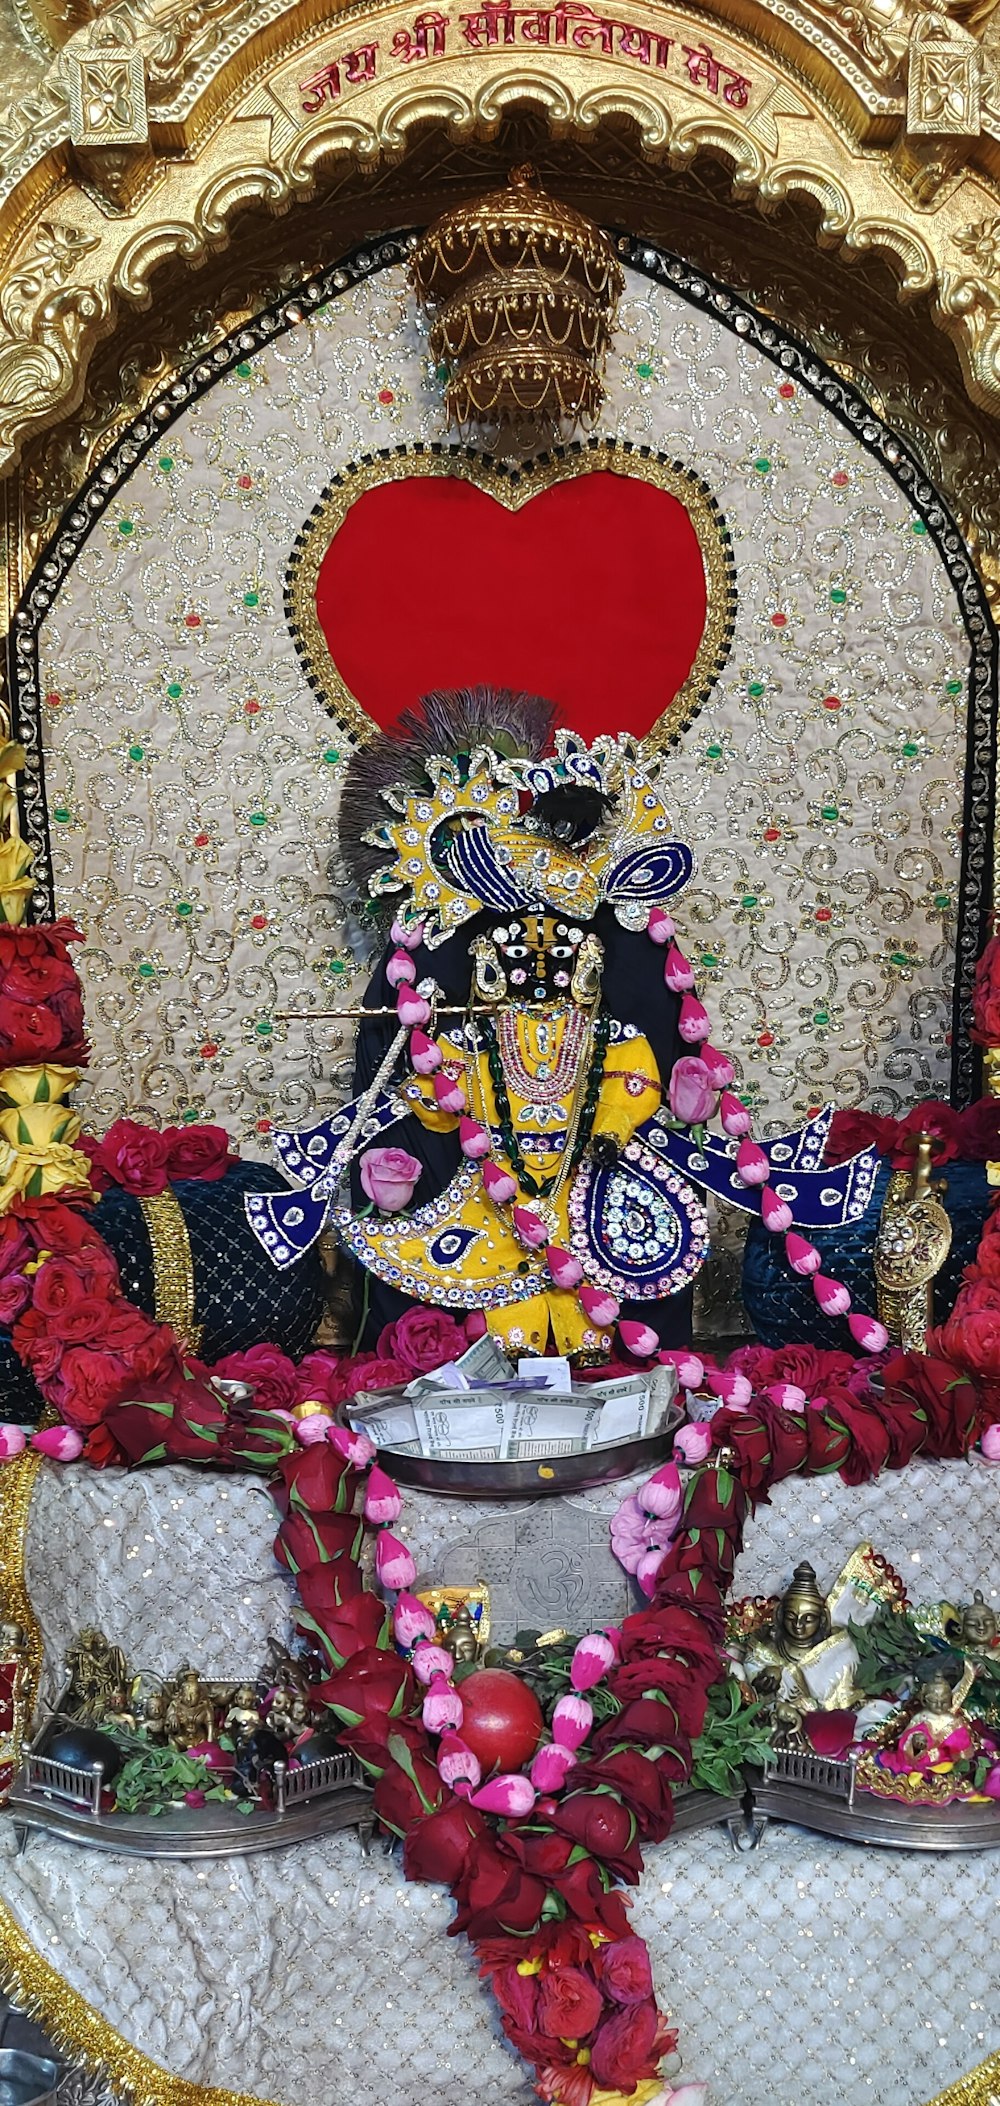 Uma estátua de um deus hindu cercada por flores